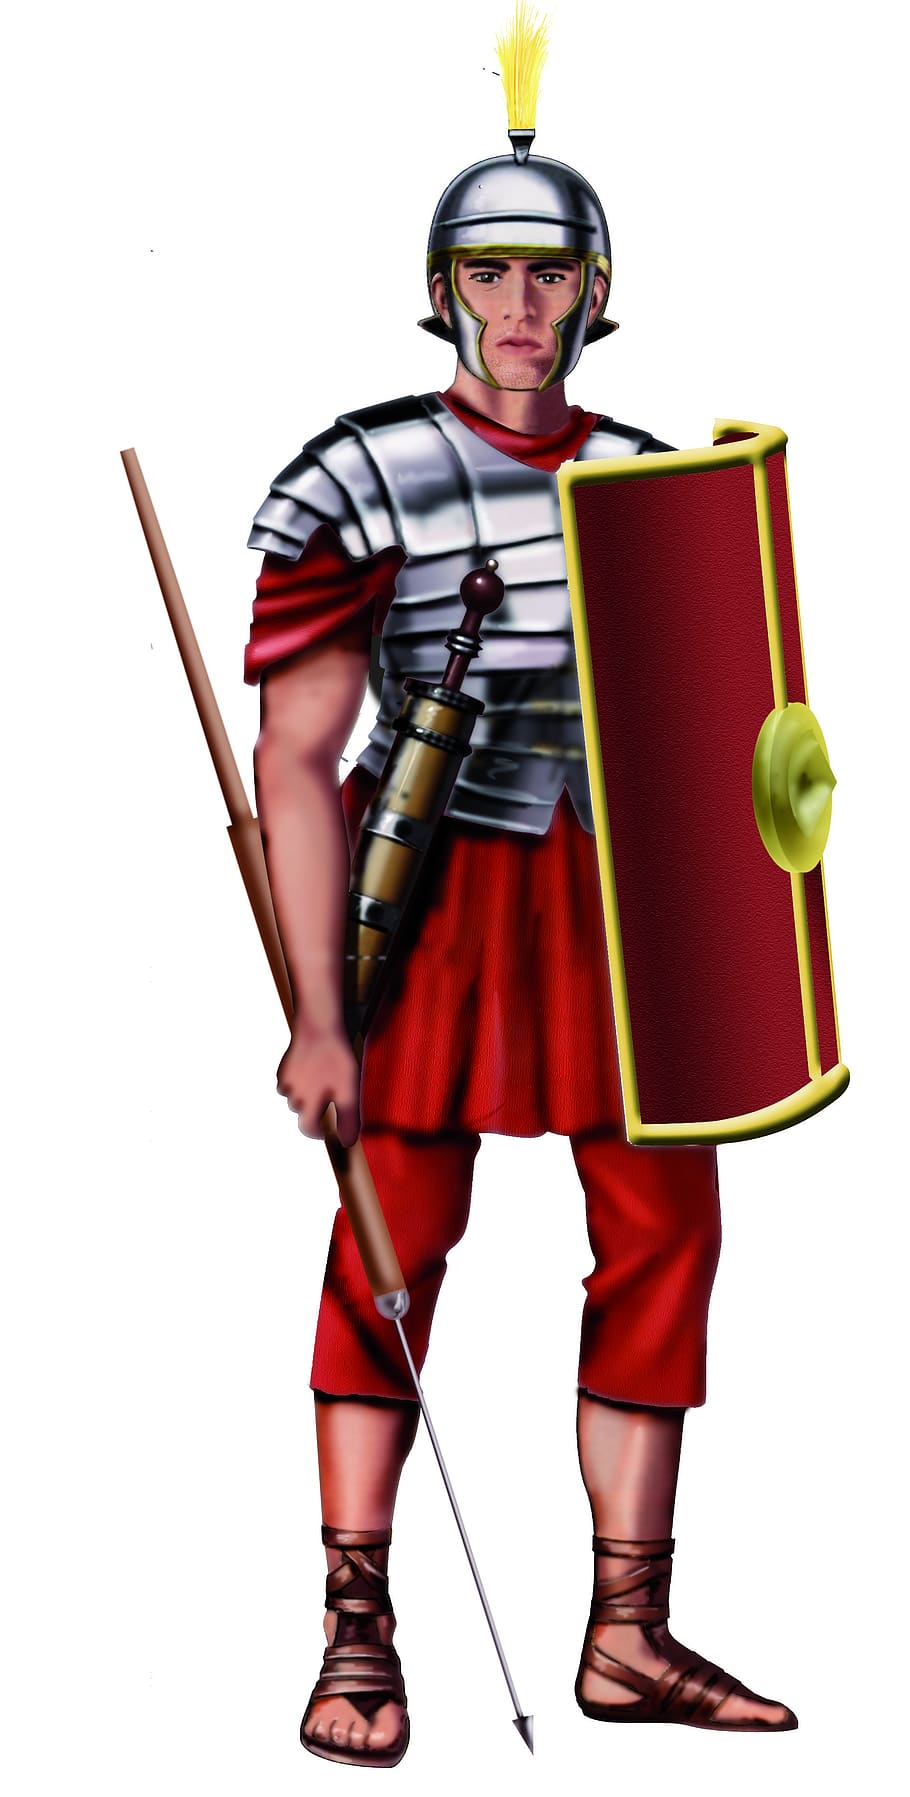 roman, tentara, sejarah, satu orang, panjang lebar, latar belakang putih, dalam ruangan, memegang, kedudukan, merah